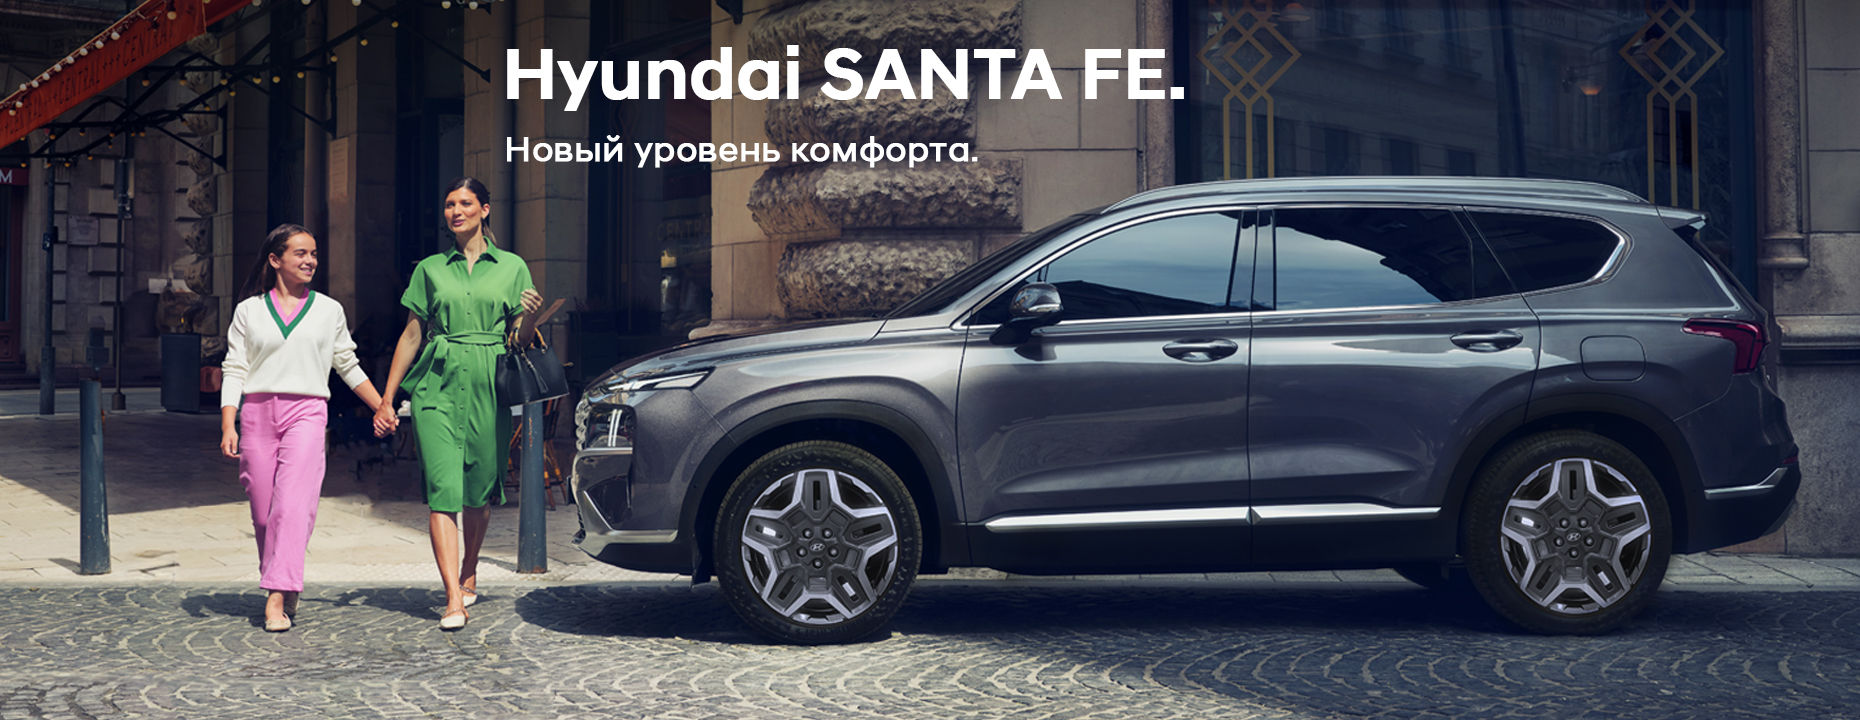 Черный Hyundai Santa Fe возле здания